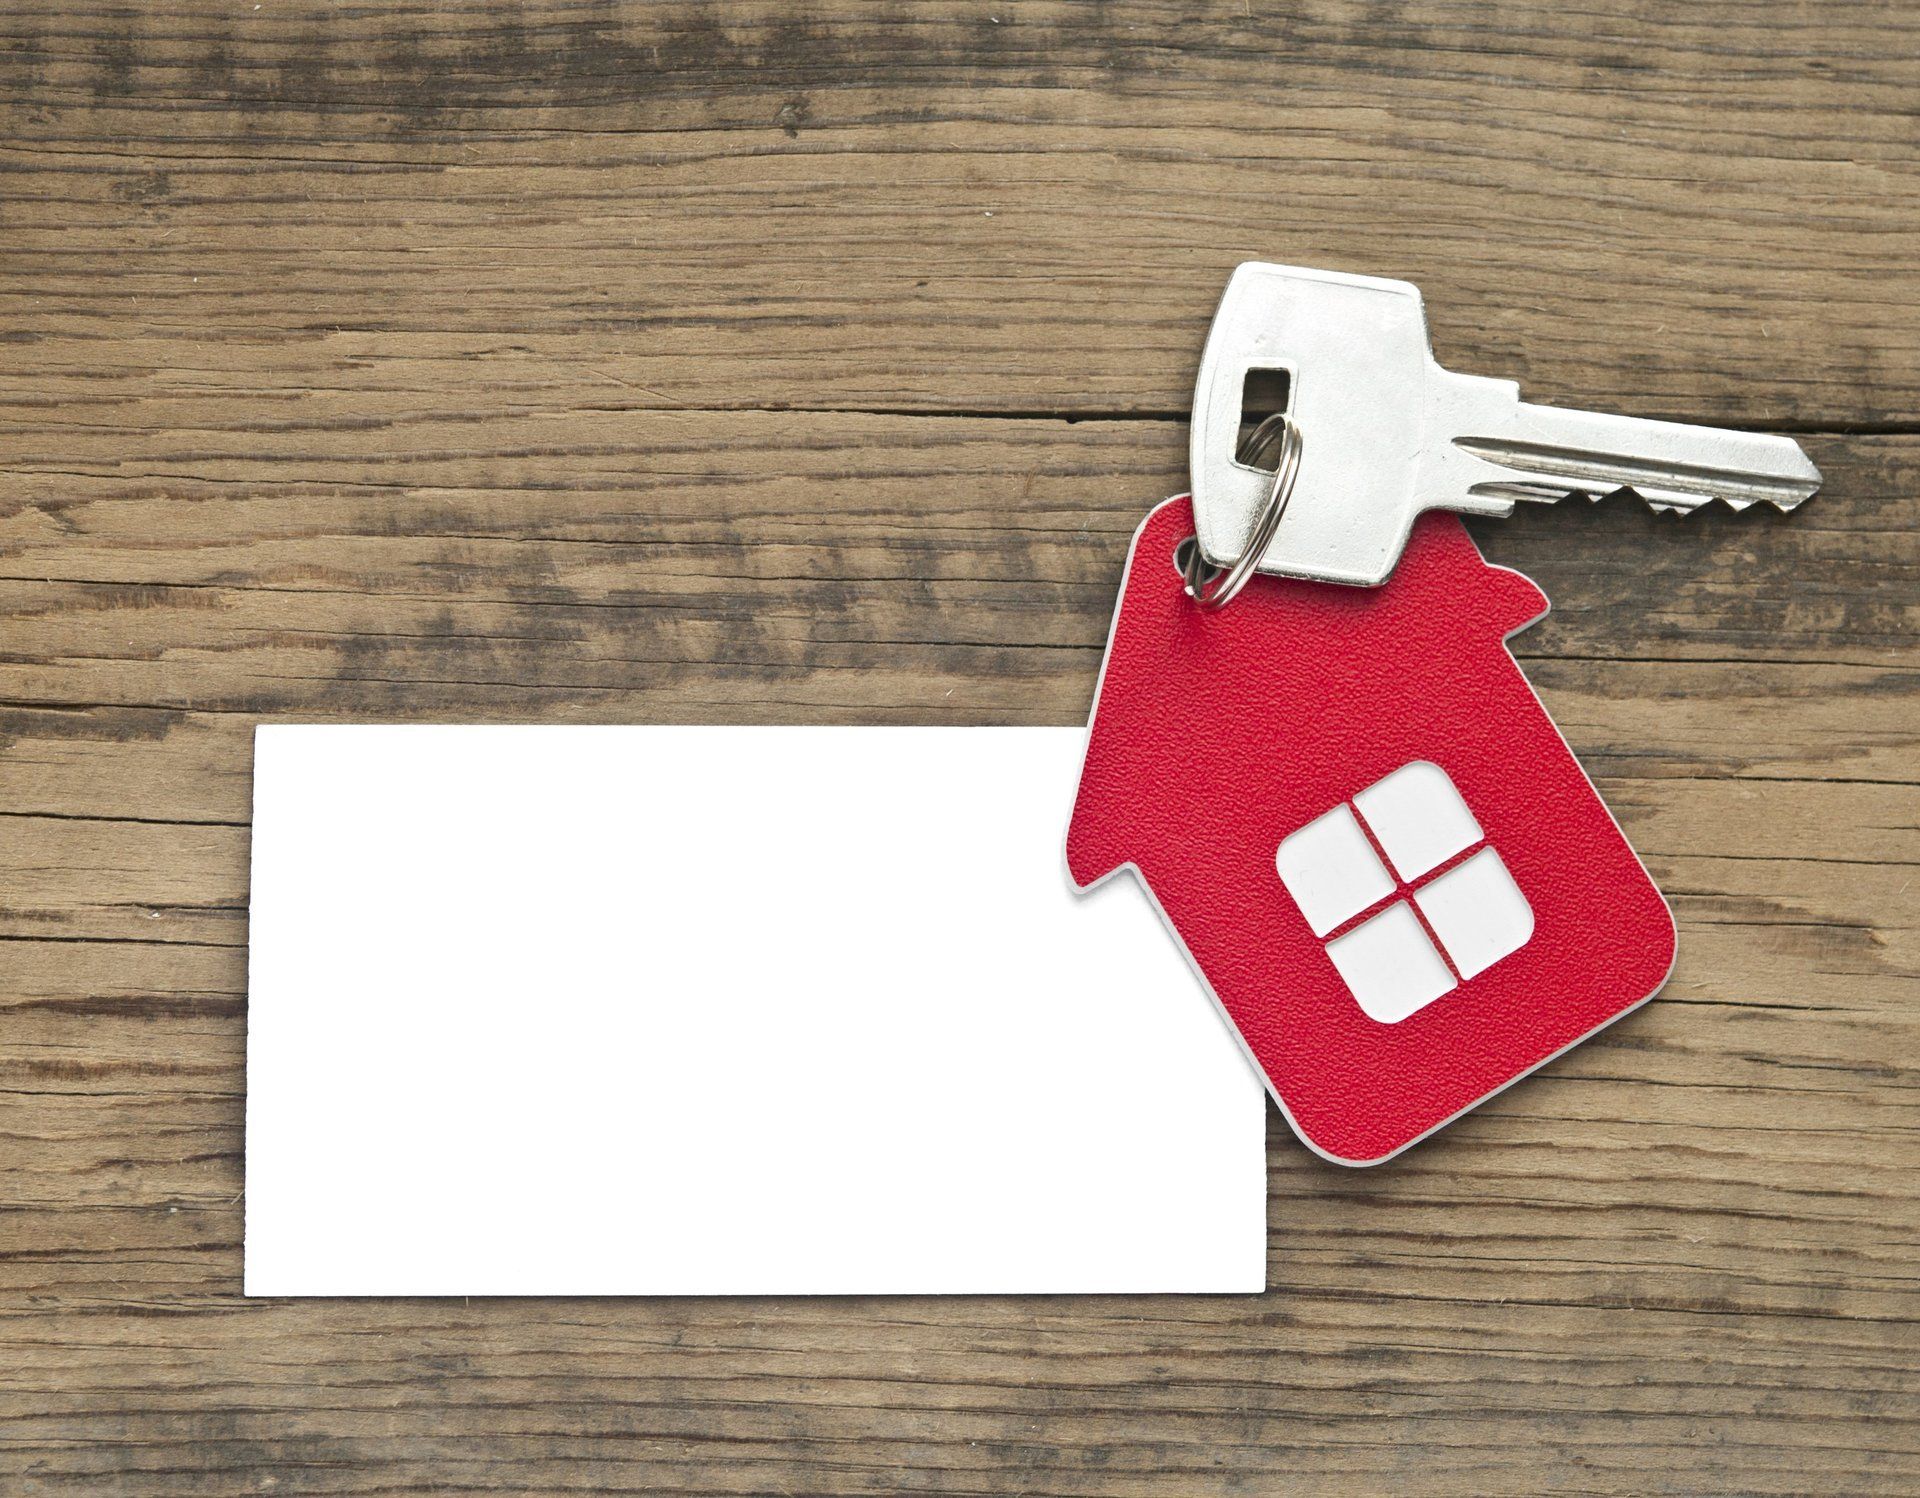 Hausförmiger Schlüsselanhänger einer Immobilie mit Rent-to-buy Option in Italien, mit Schlüssel und leerer weißer Karte auf Holzhintergrund.